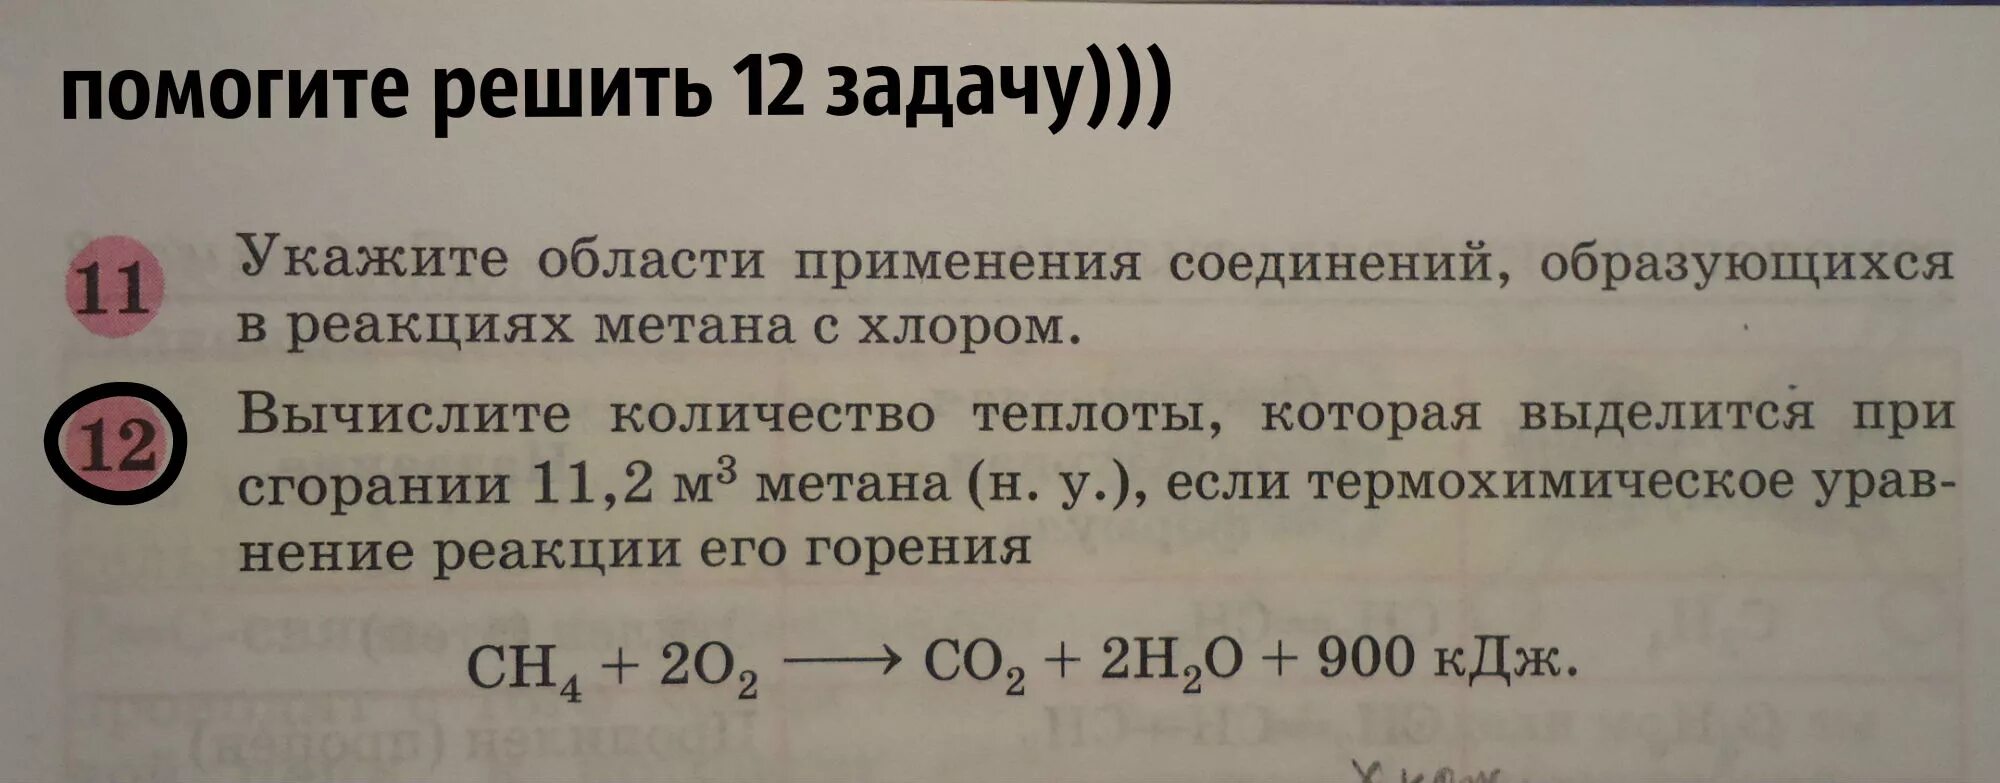 Реакция метана с хлором. (N-2)*180 задачи.